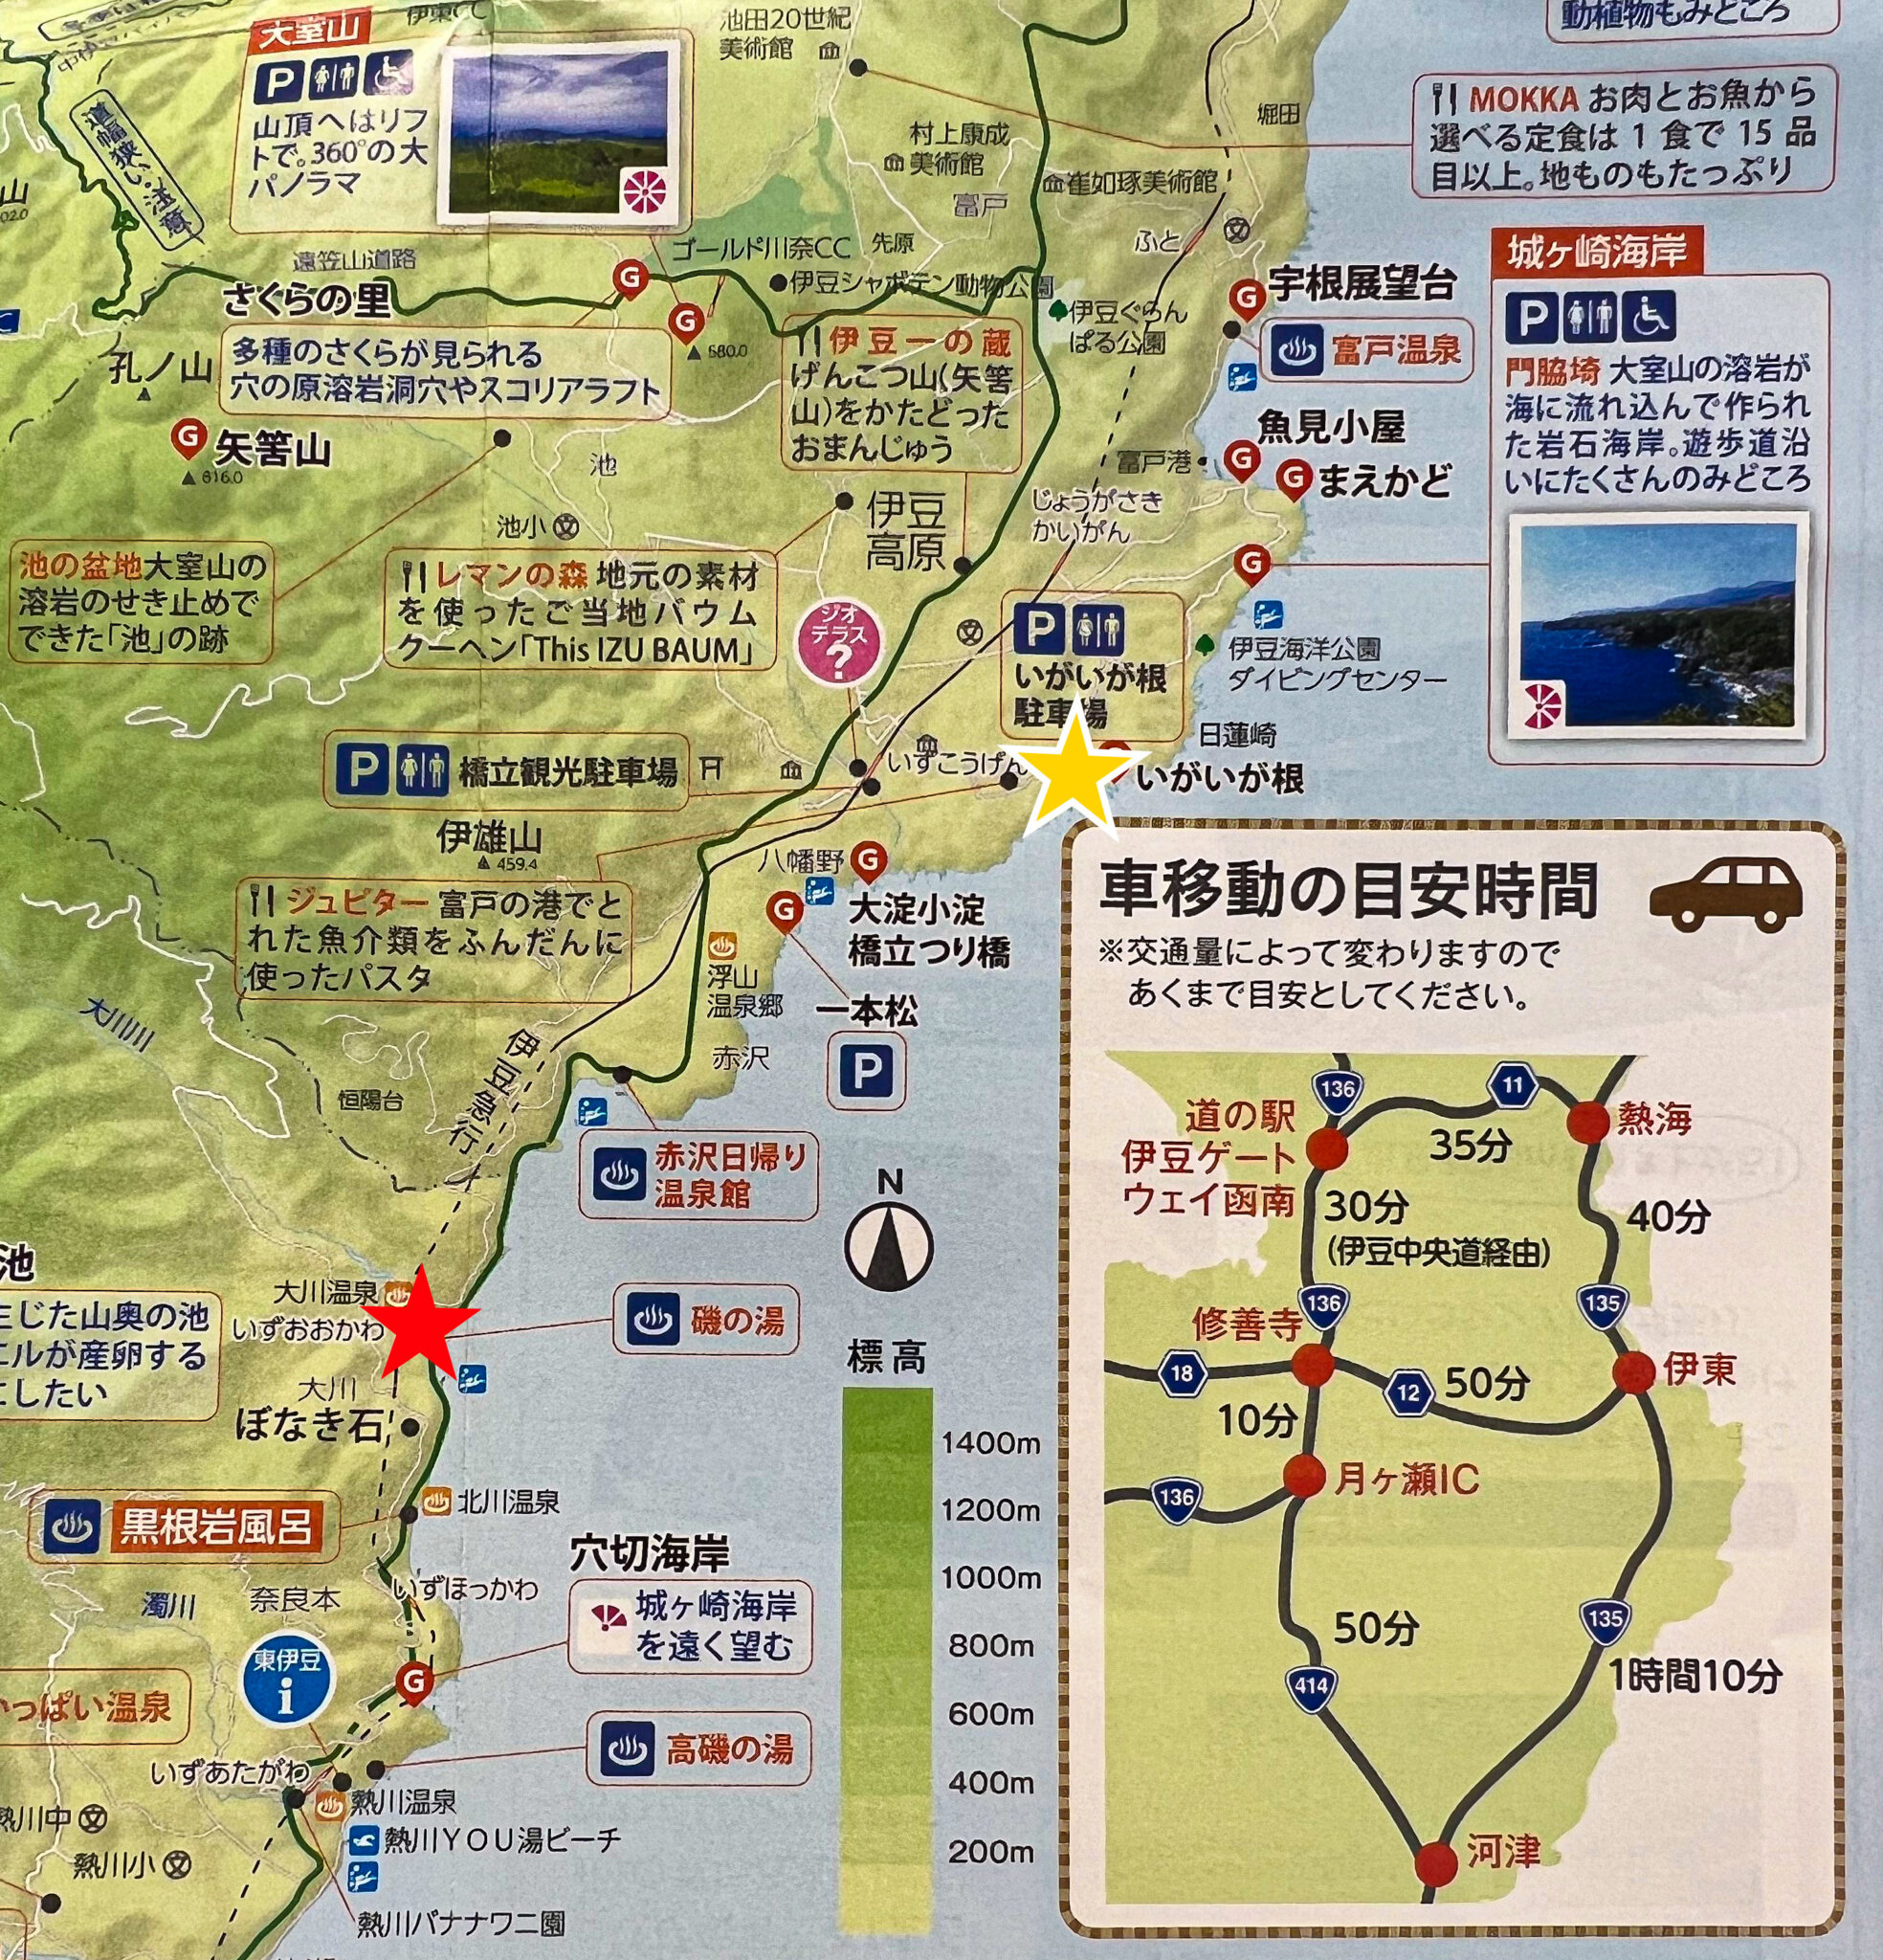 地図で見てみると、赤い★が「伊豆大川」、黄色い★が「いがいが根」です。